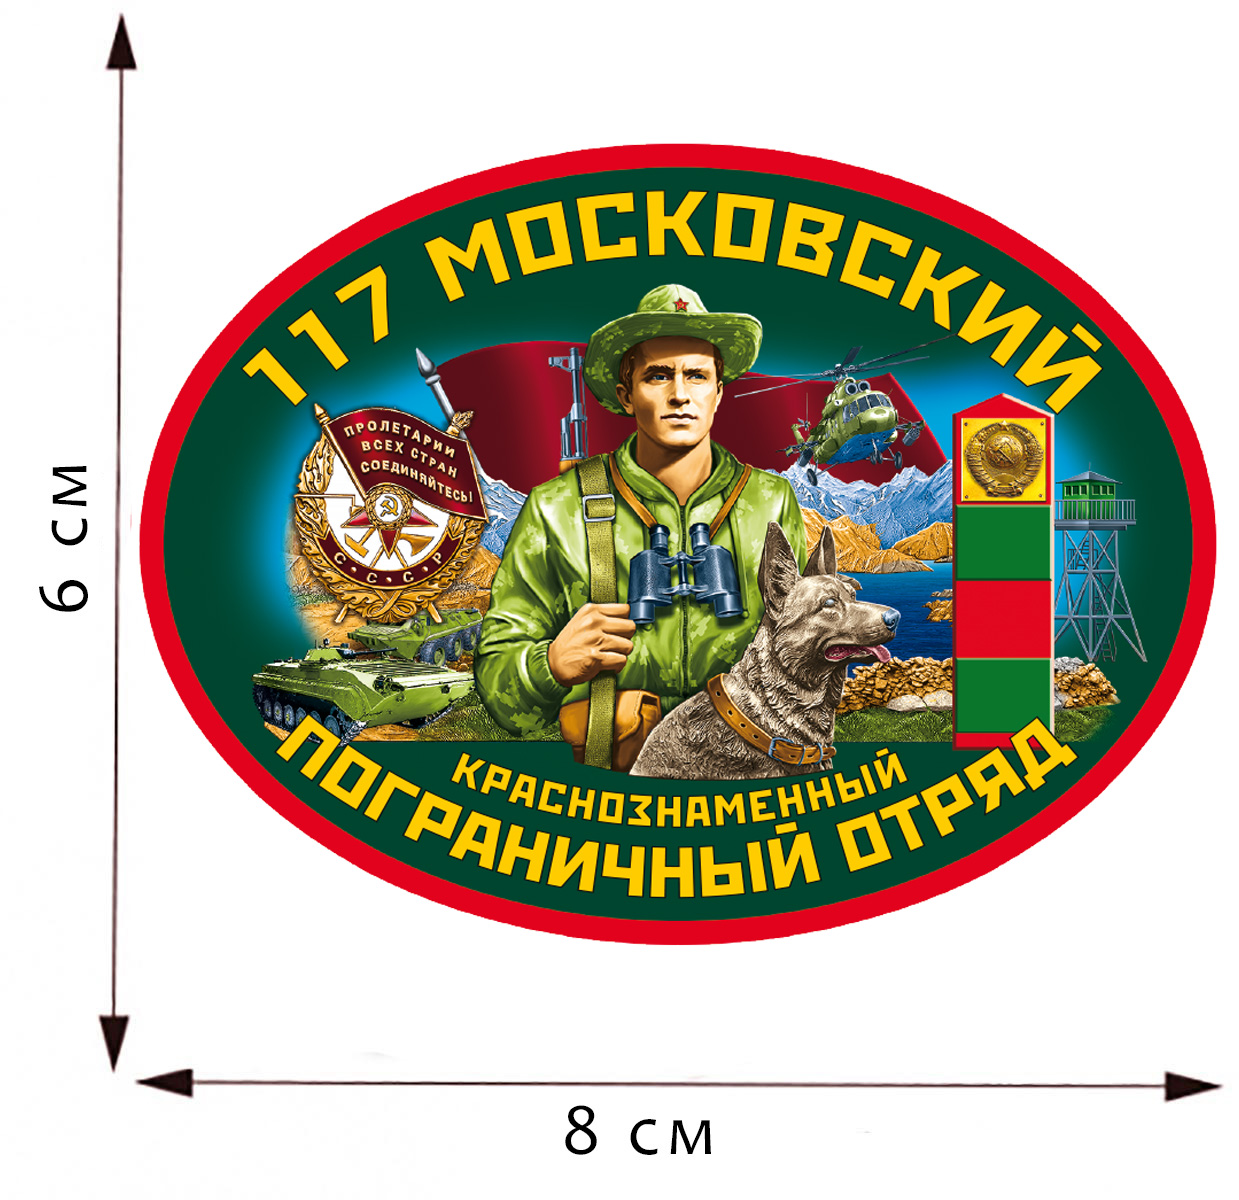 Термоаппликация "117 Московский пограничный отряд" 